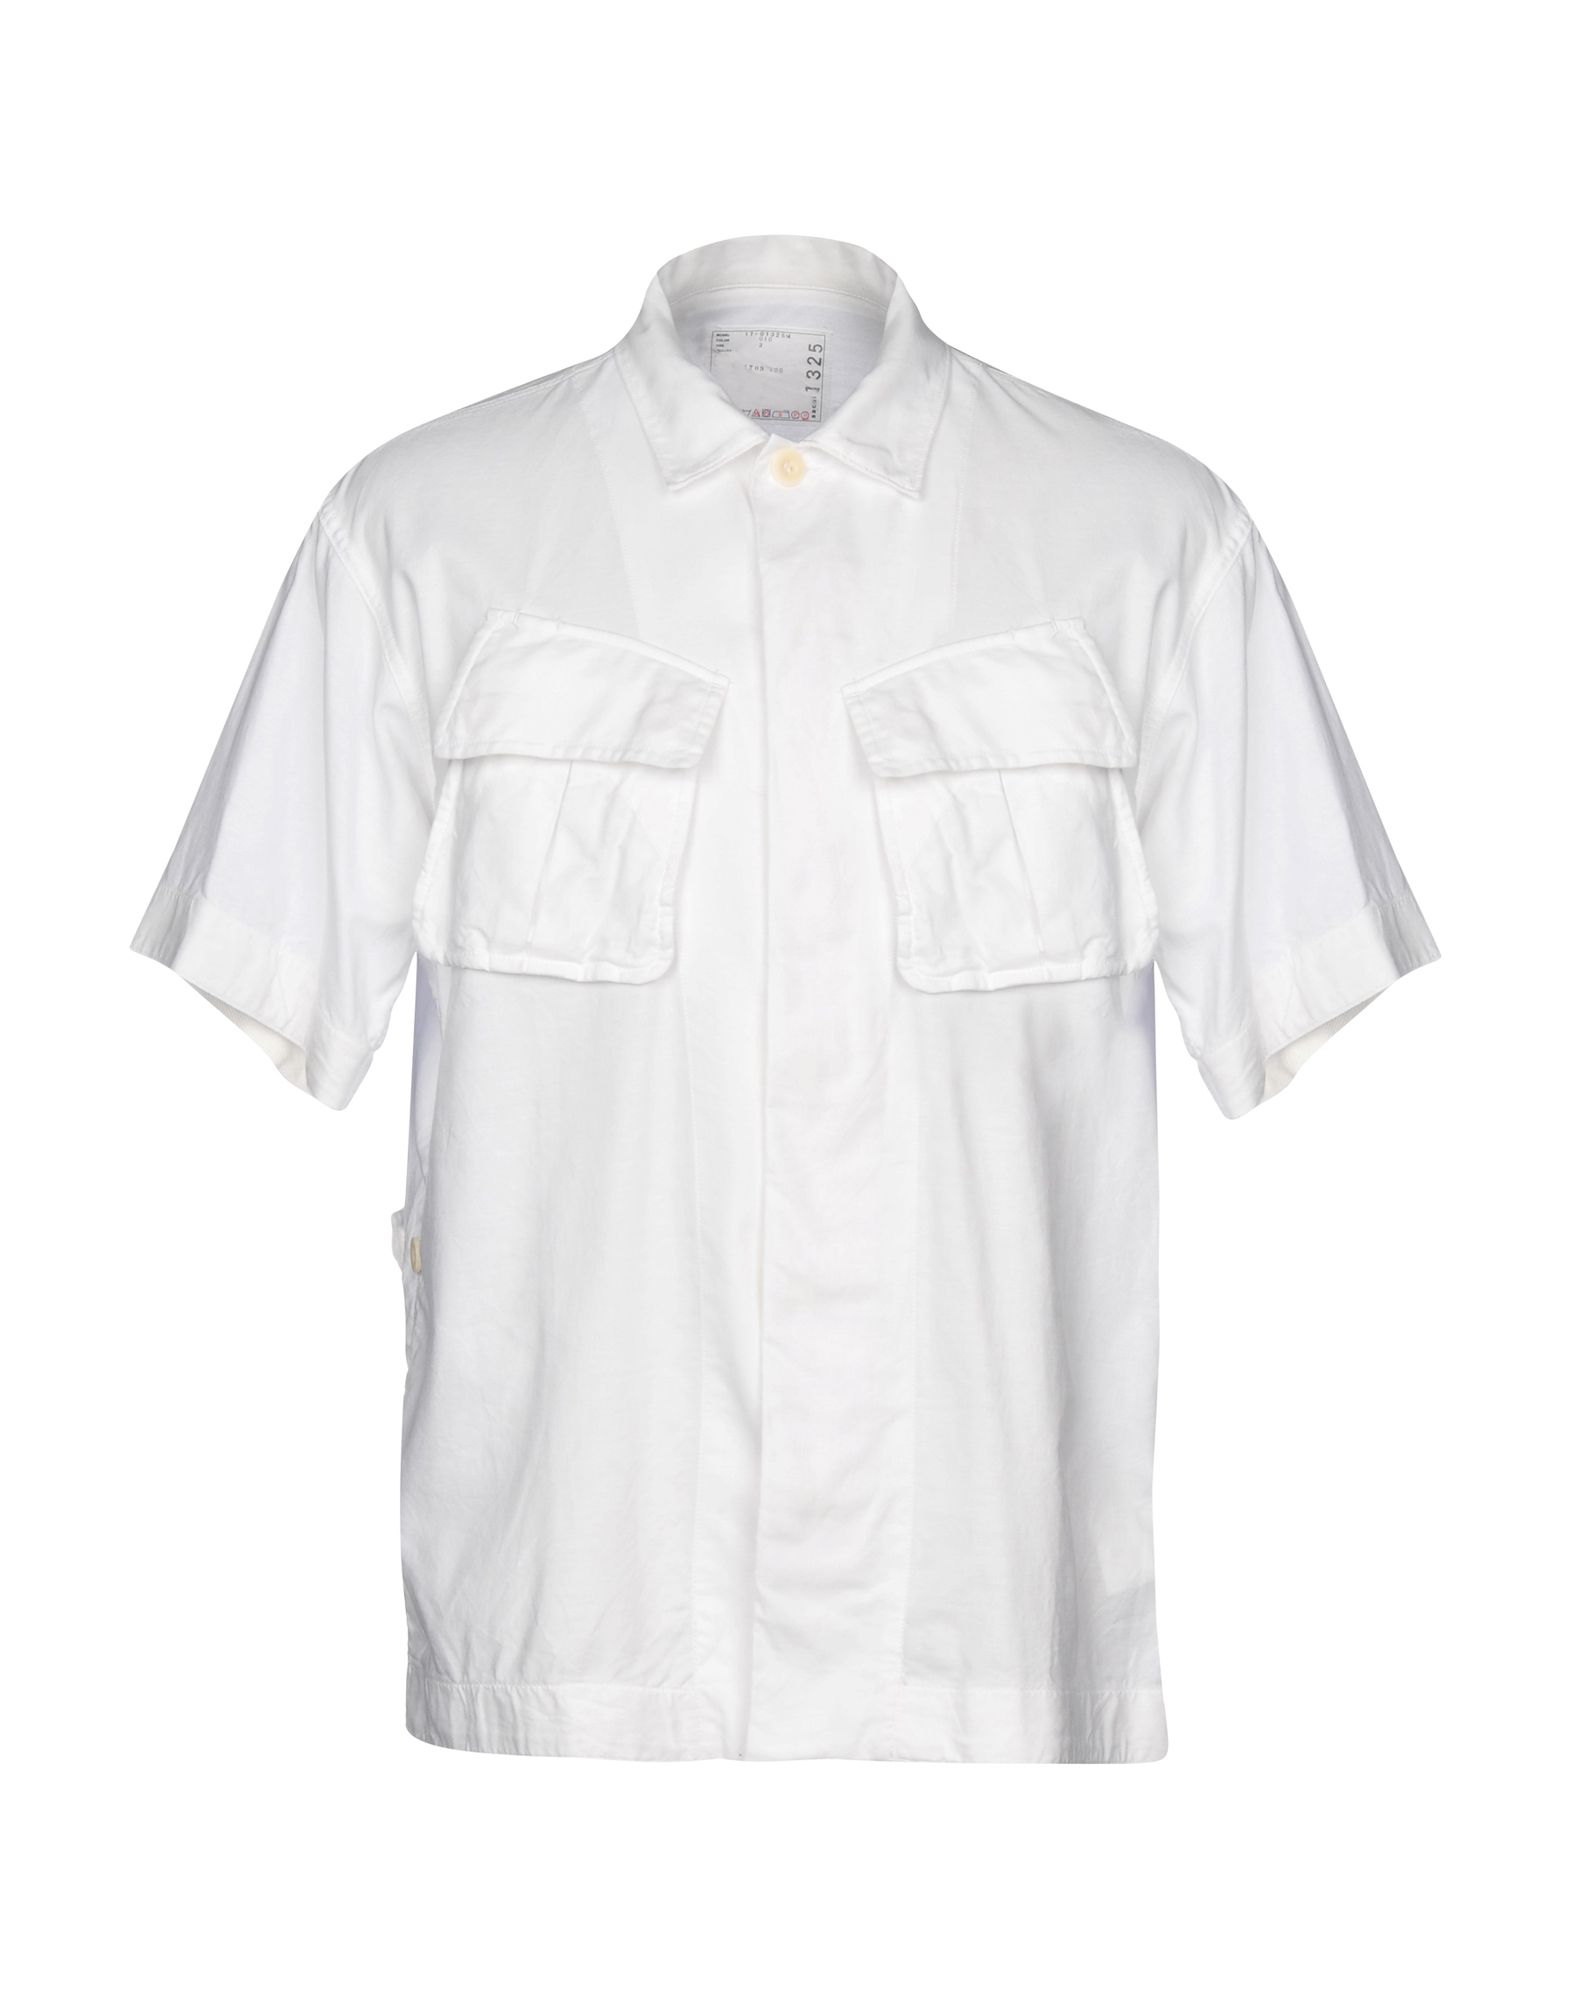 Sacai Shirts In White | ModeSens